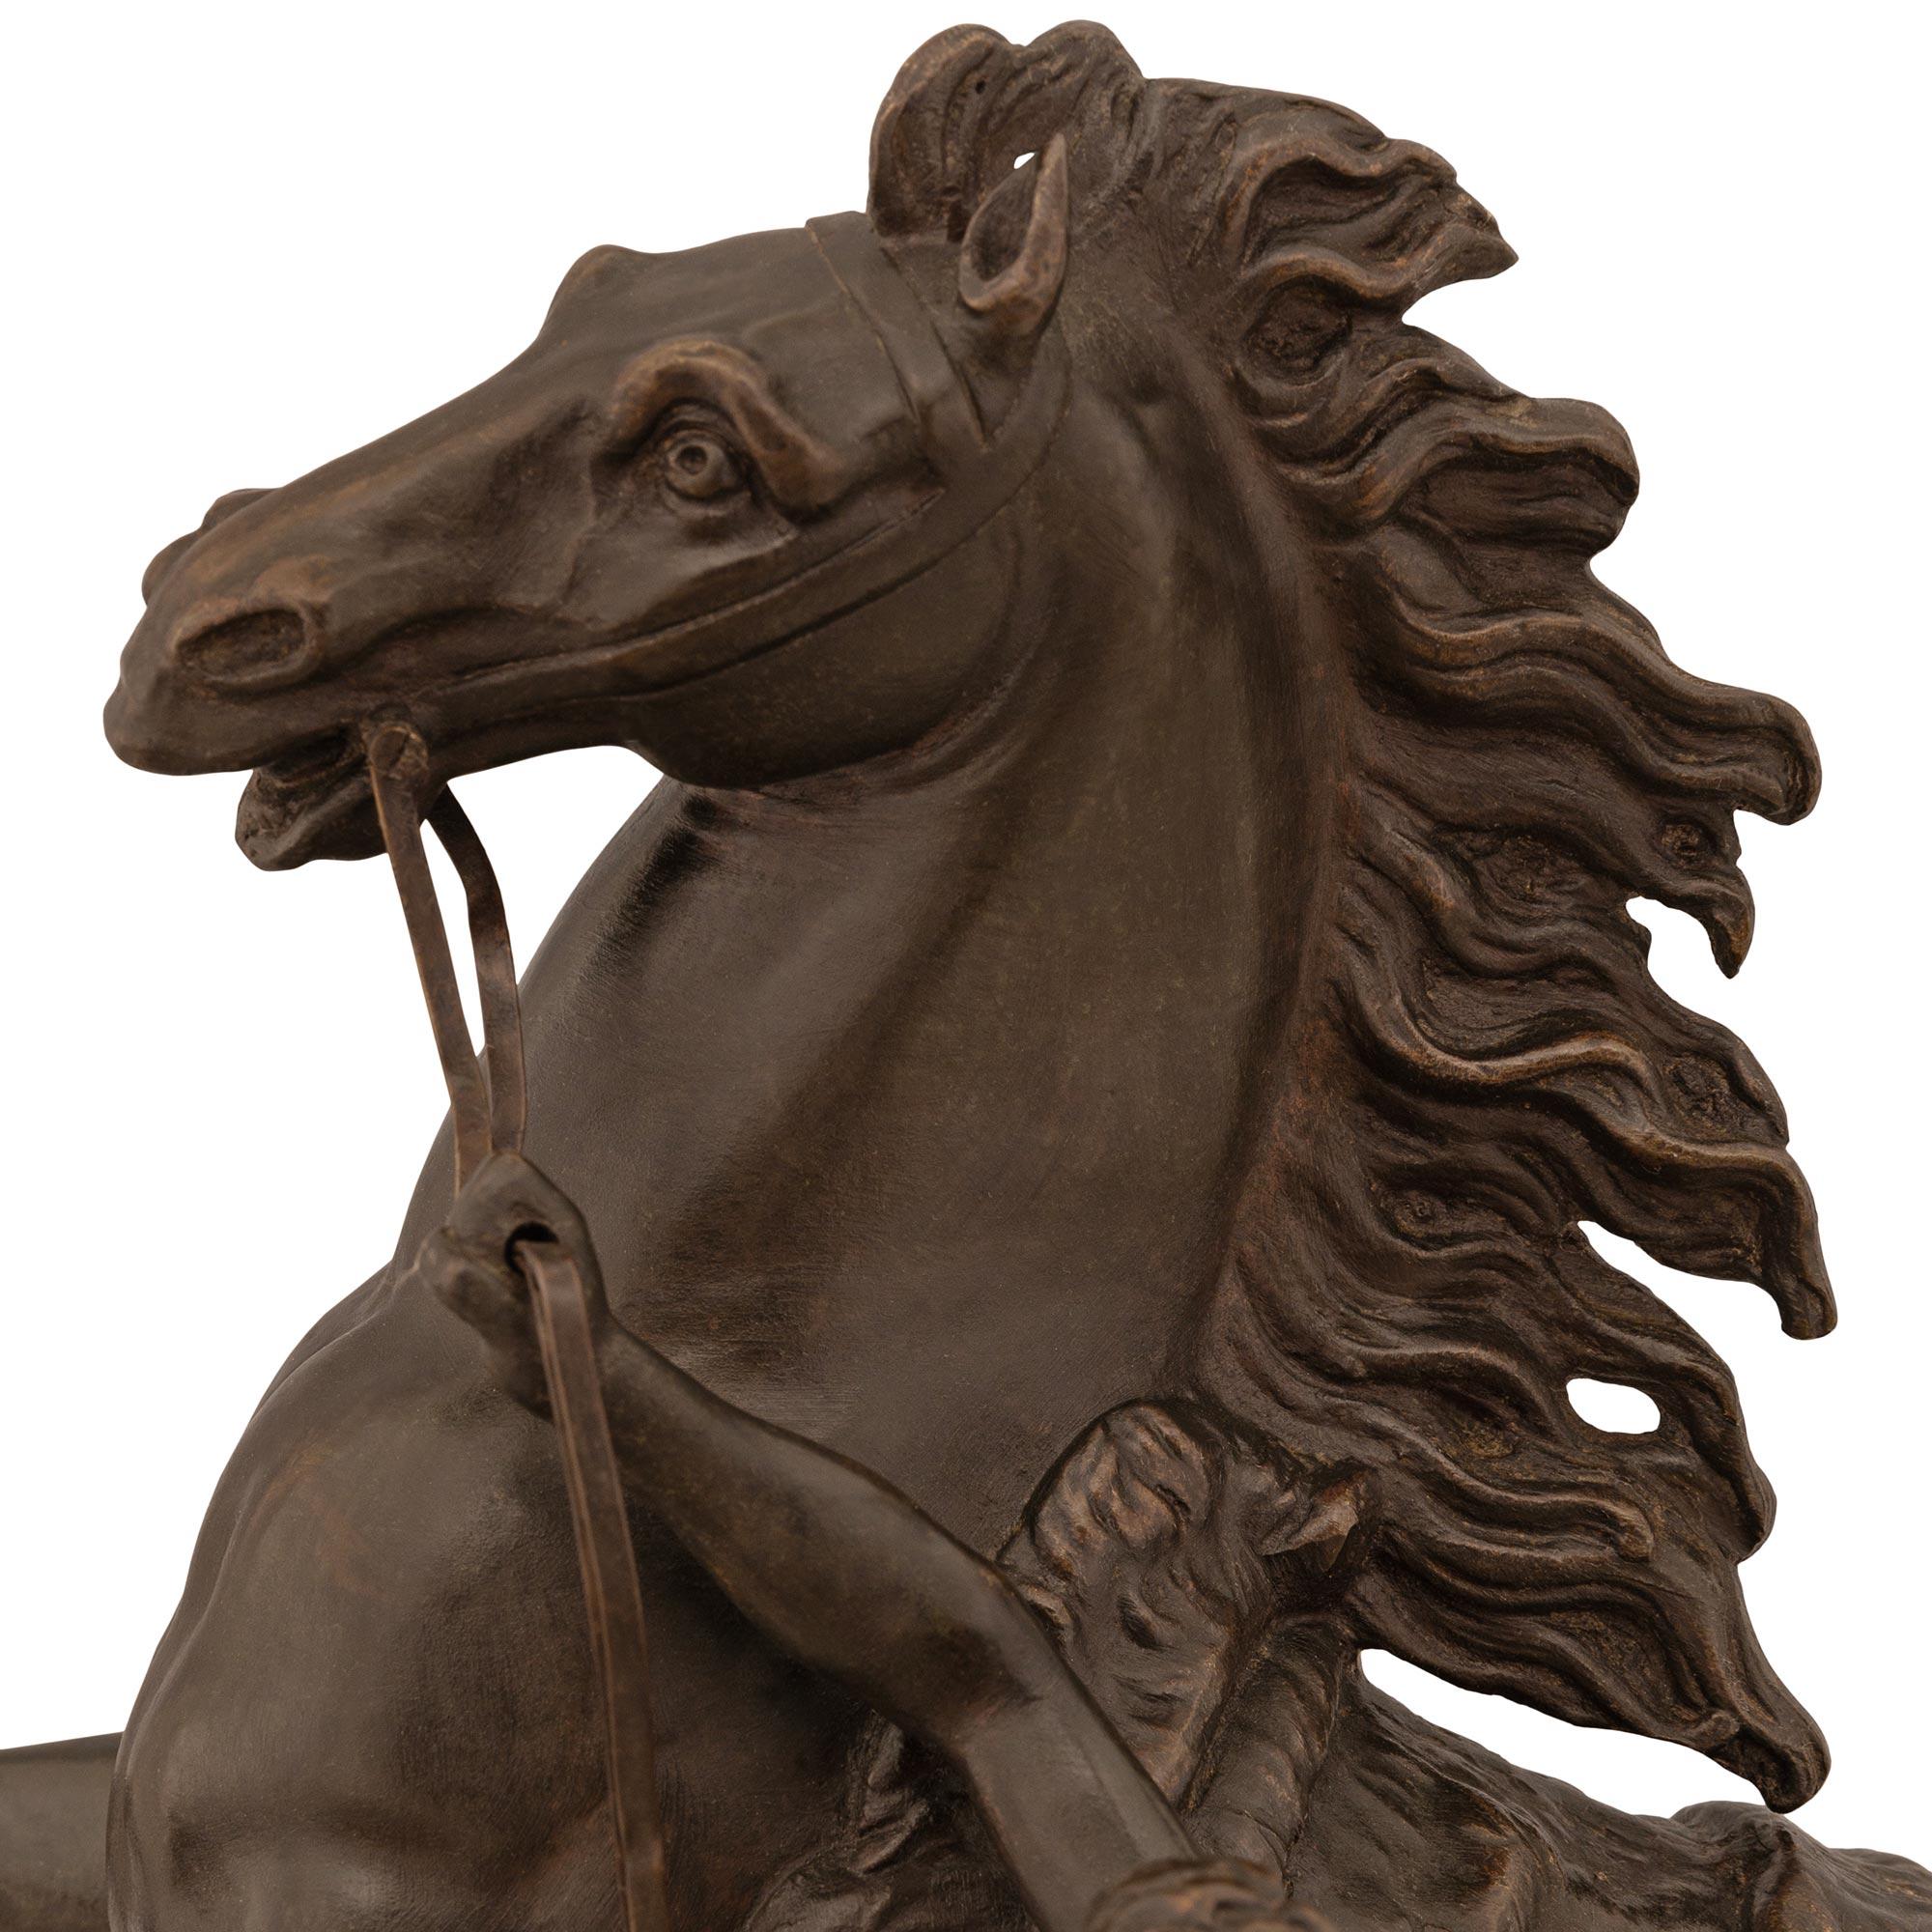 Belle statue en bronze patiné du XIXe siècle représentant un cheval et son palefrenier, d'après les chevaux de Marli. Le cheval spectaculaire est drapé dans un tapis de selle et présente une crinière et une queue merveilleusement fluides, tout en se